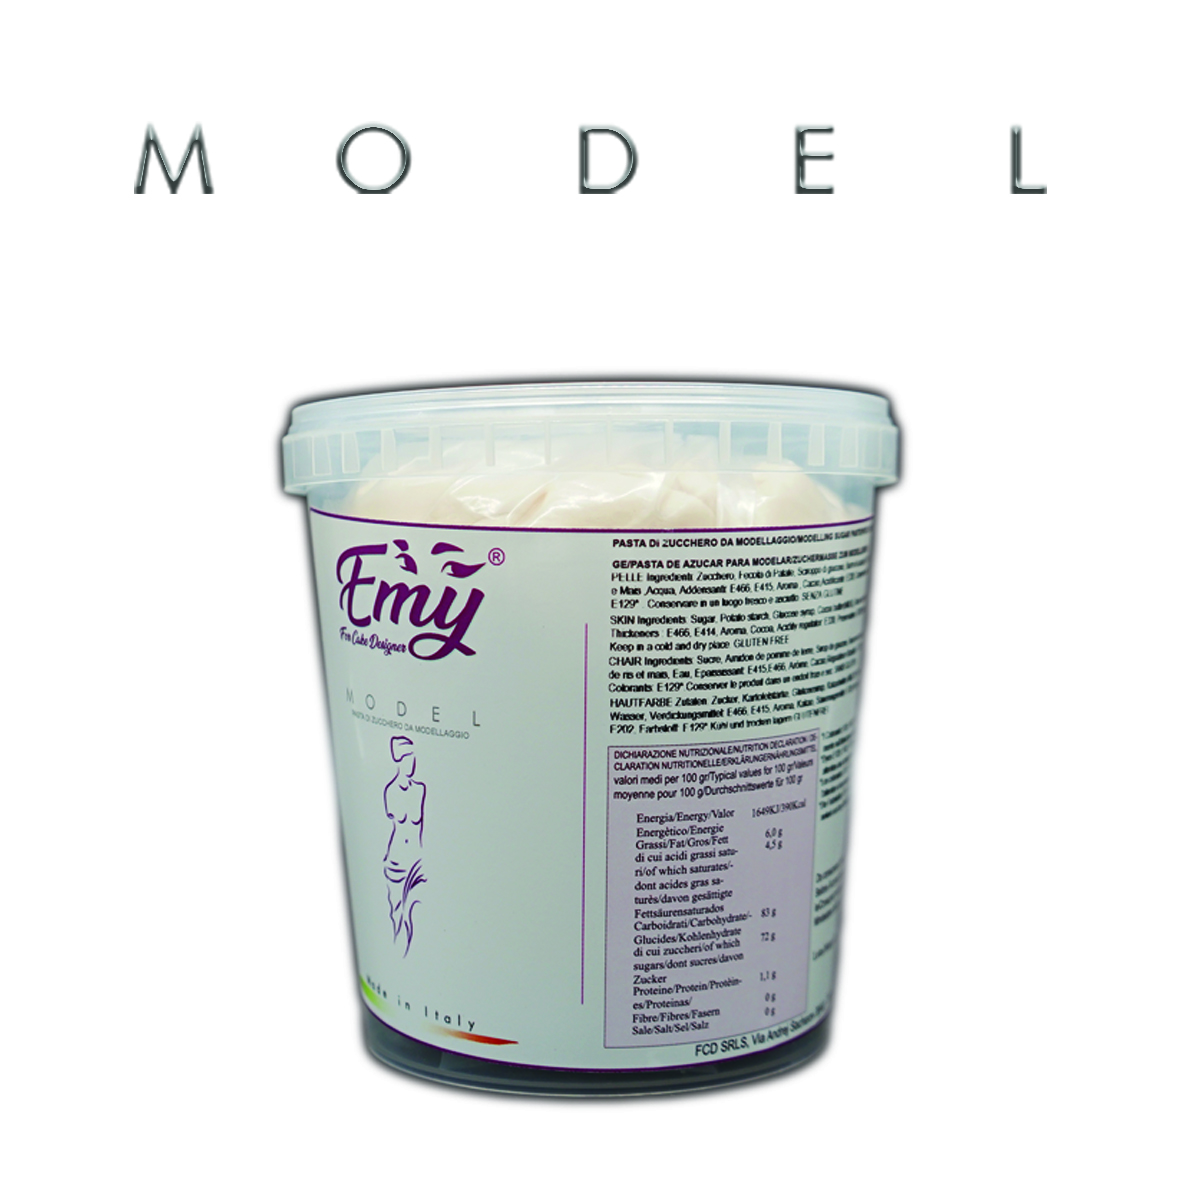  Foto: For Cake Designer - Emy model pelle 1 kg